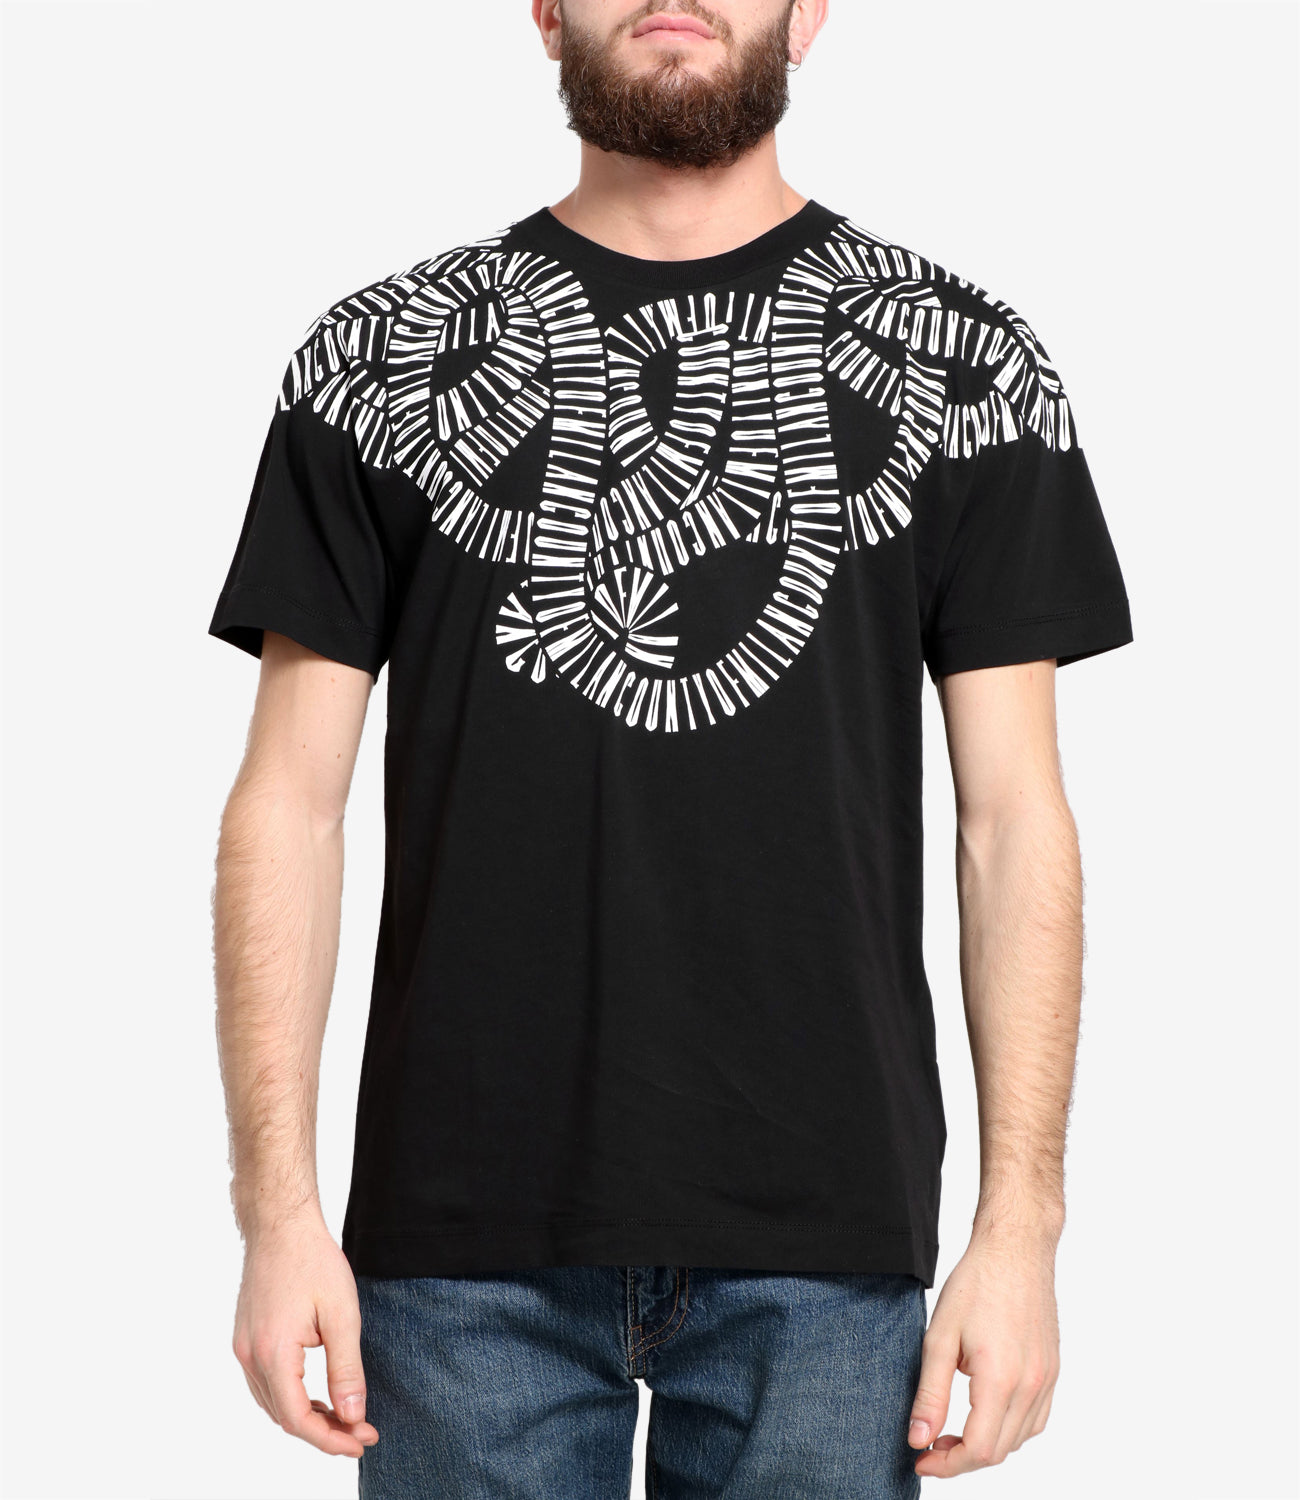 Marcelo Burlon | T-Shirt Snake Wings Black and White